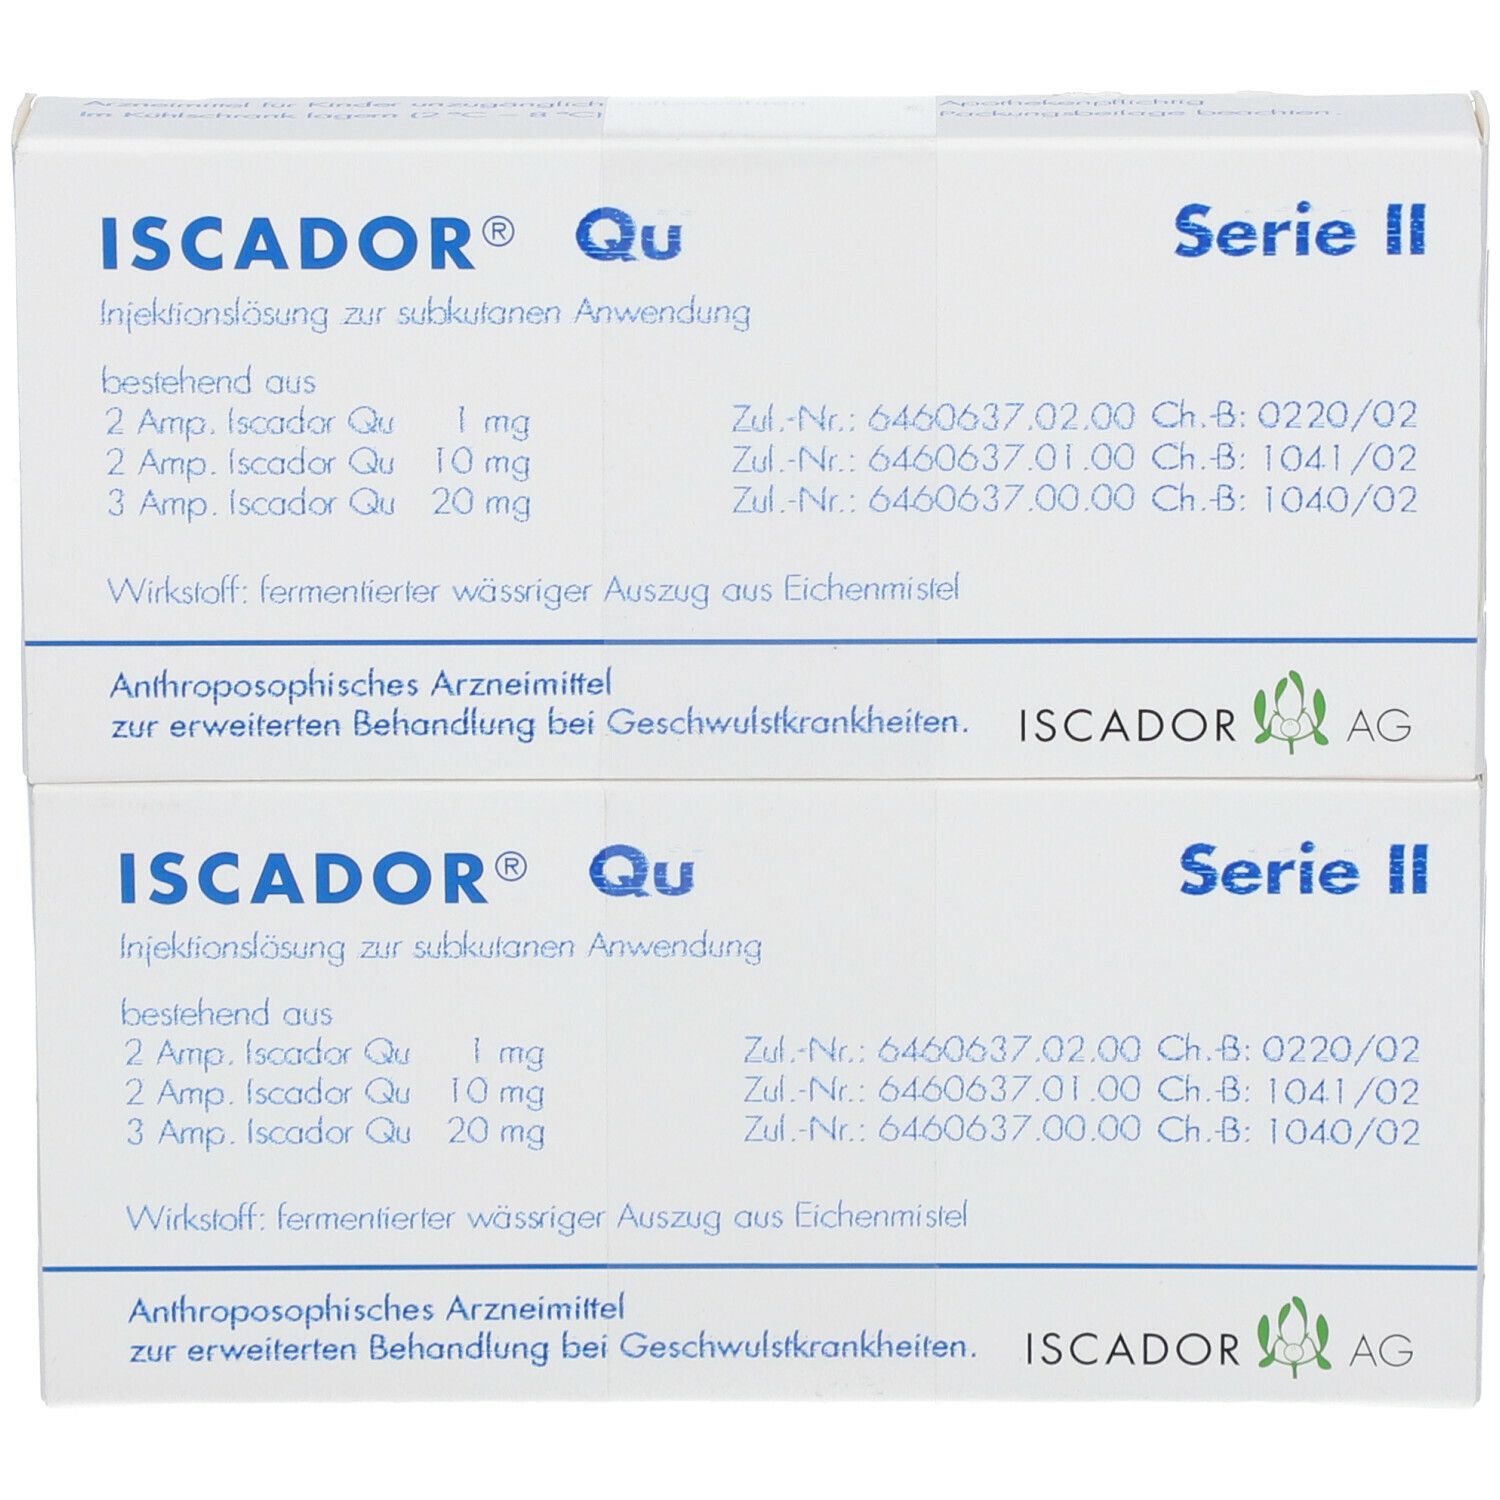 ISCADOR® Qu Serie II